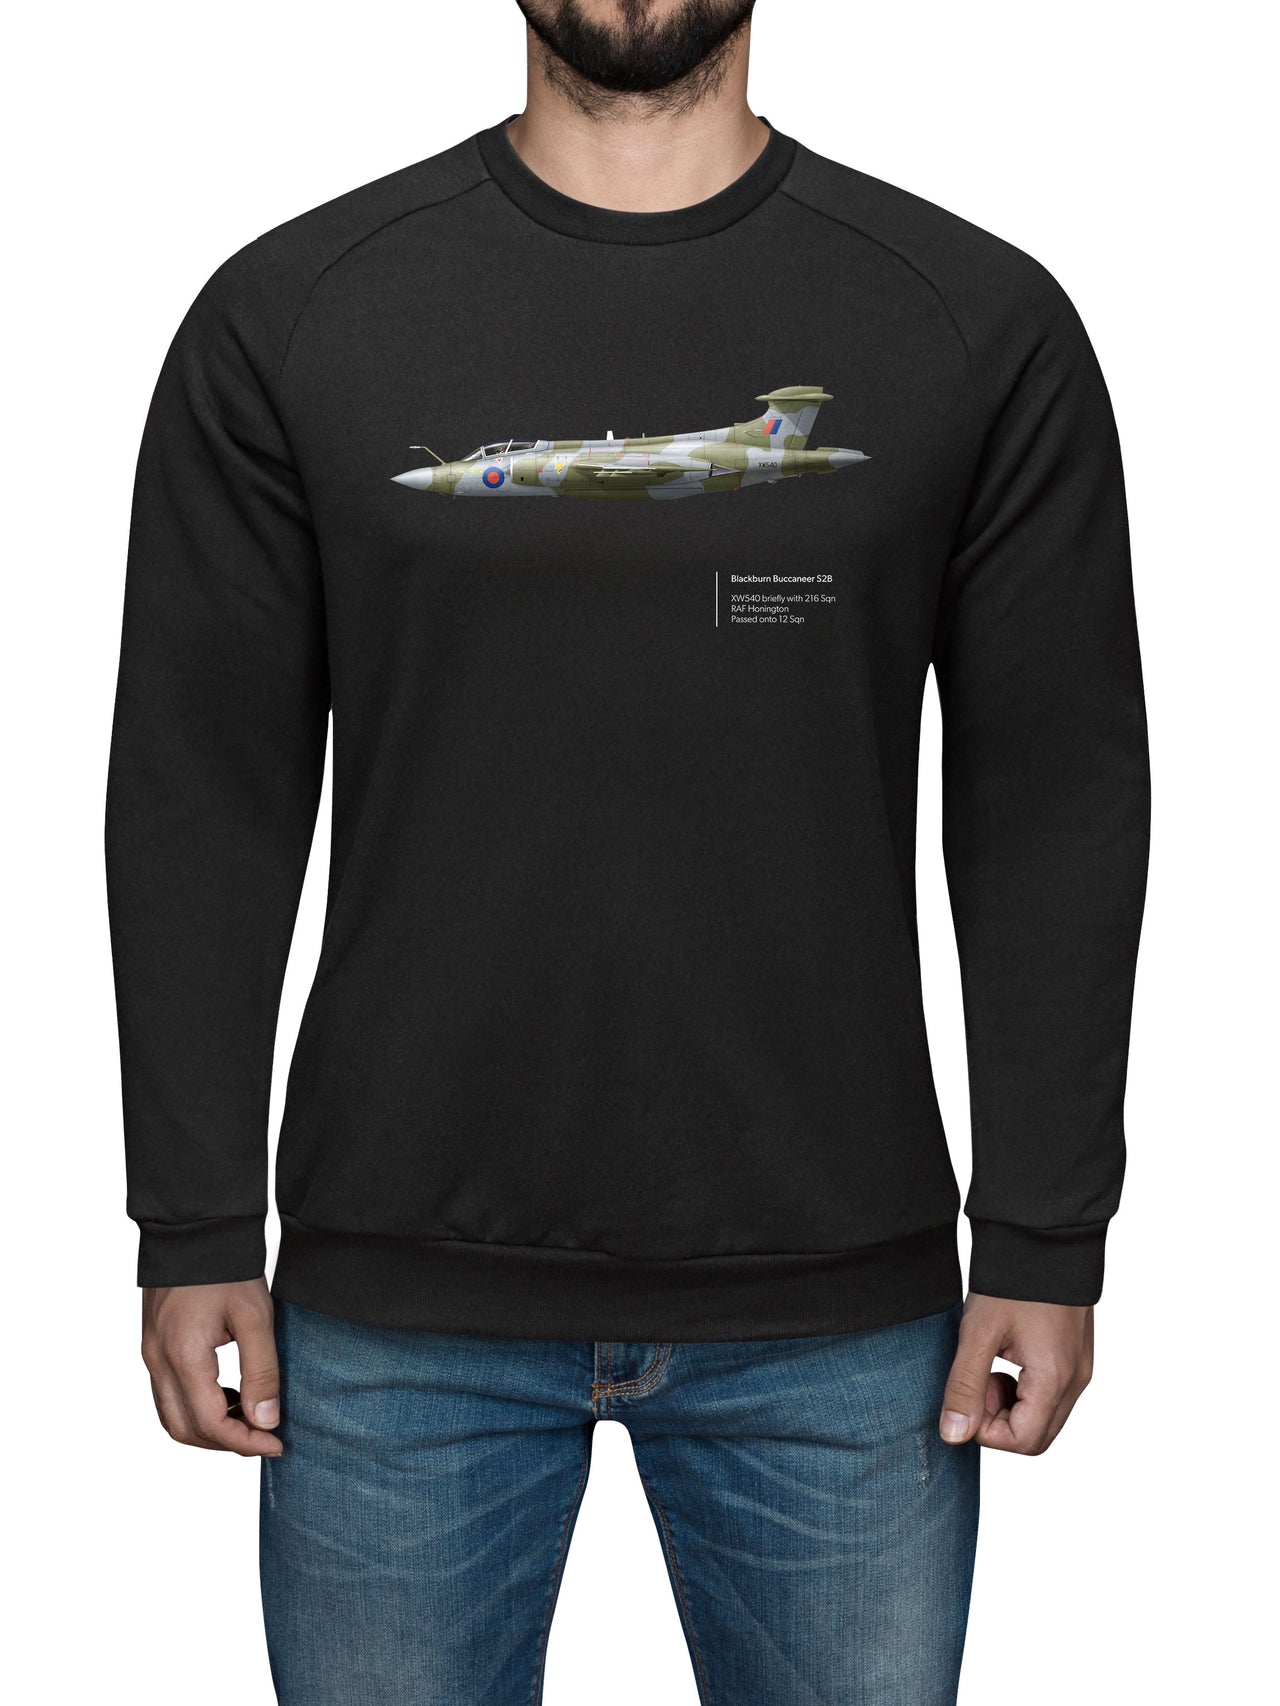 Buccaneer 216SQN - Sweat Shirt